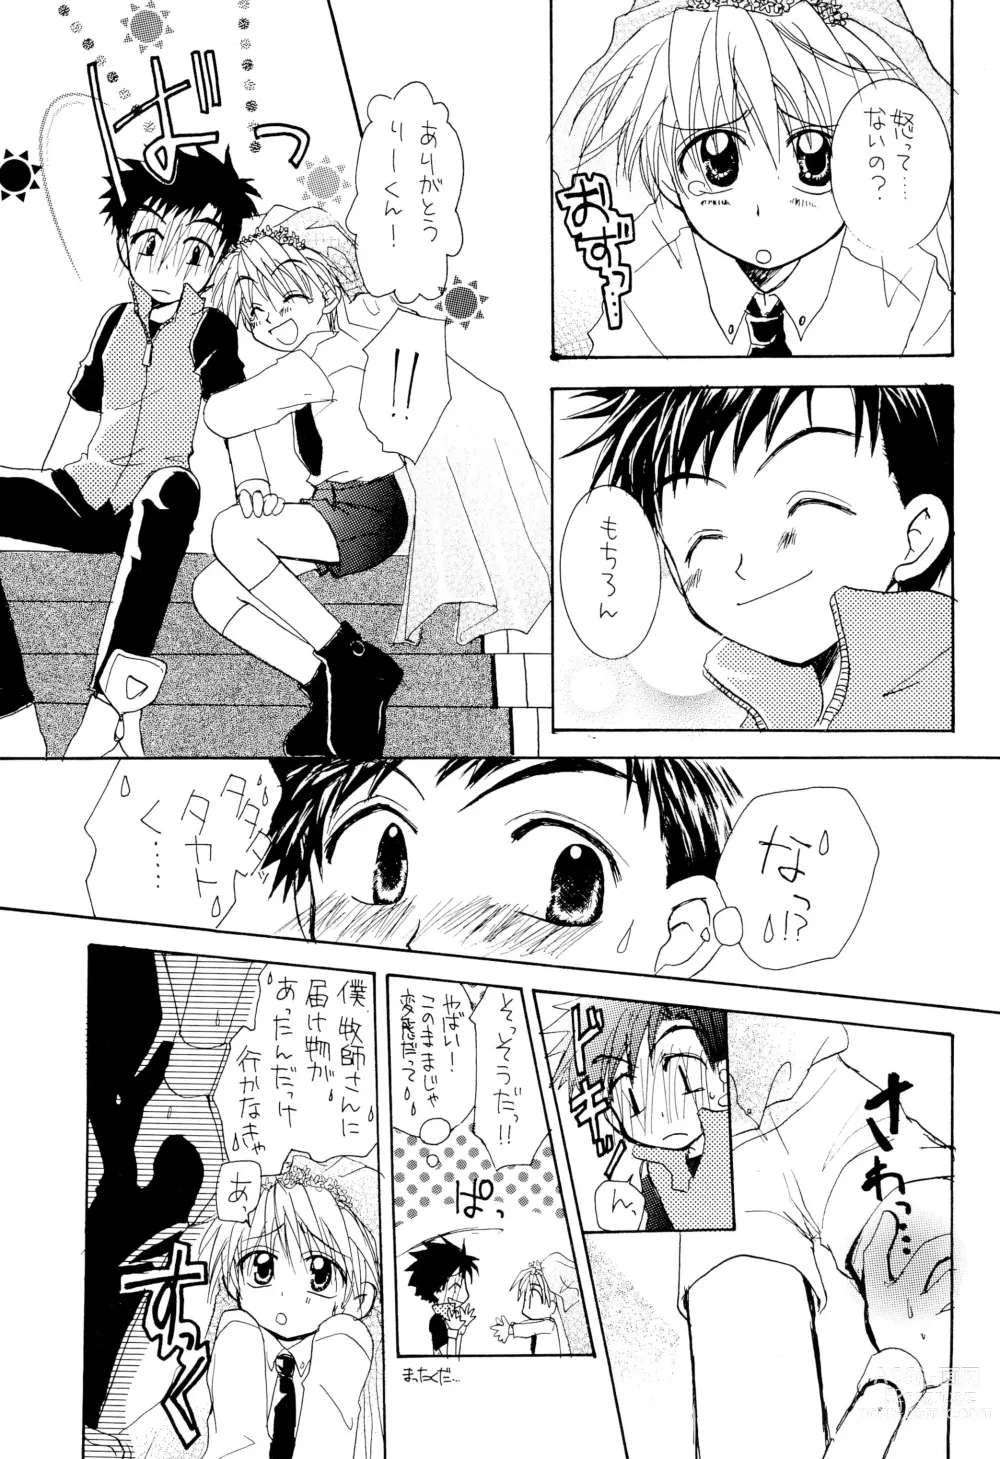 Page 9 of doujinshi LiTaka 2